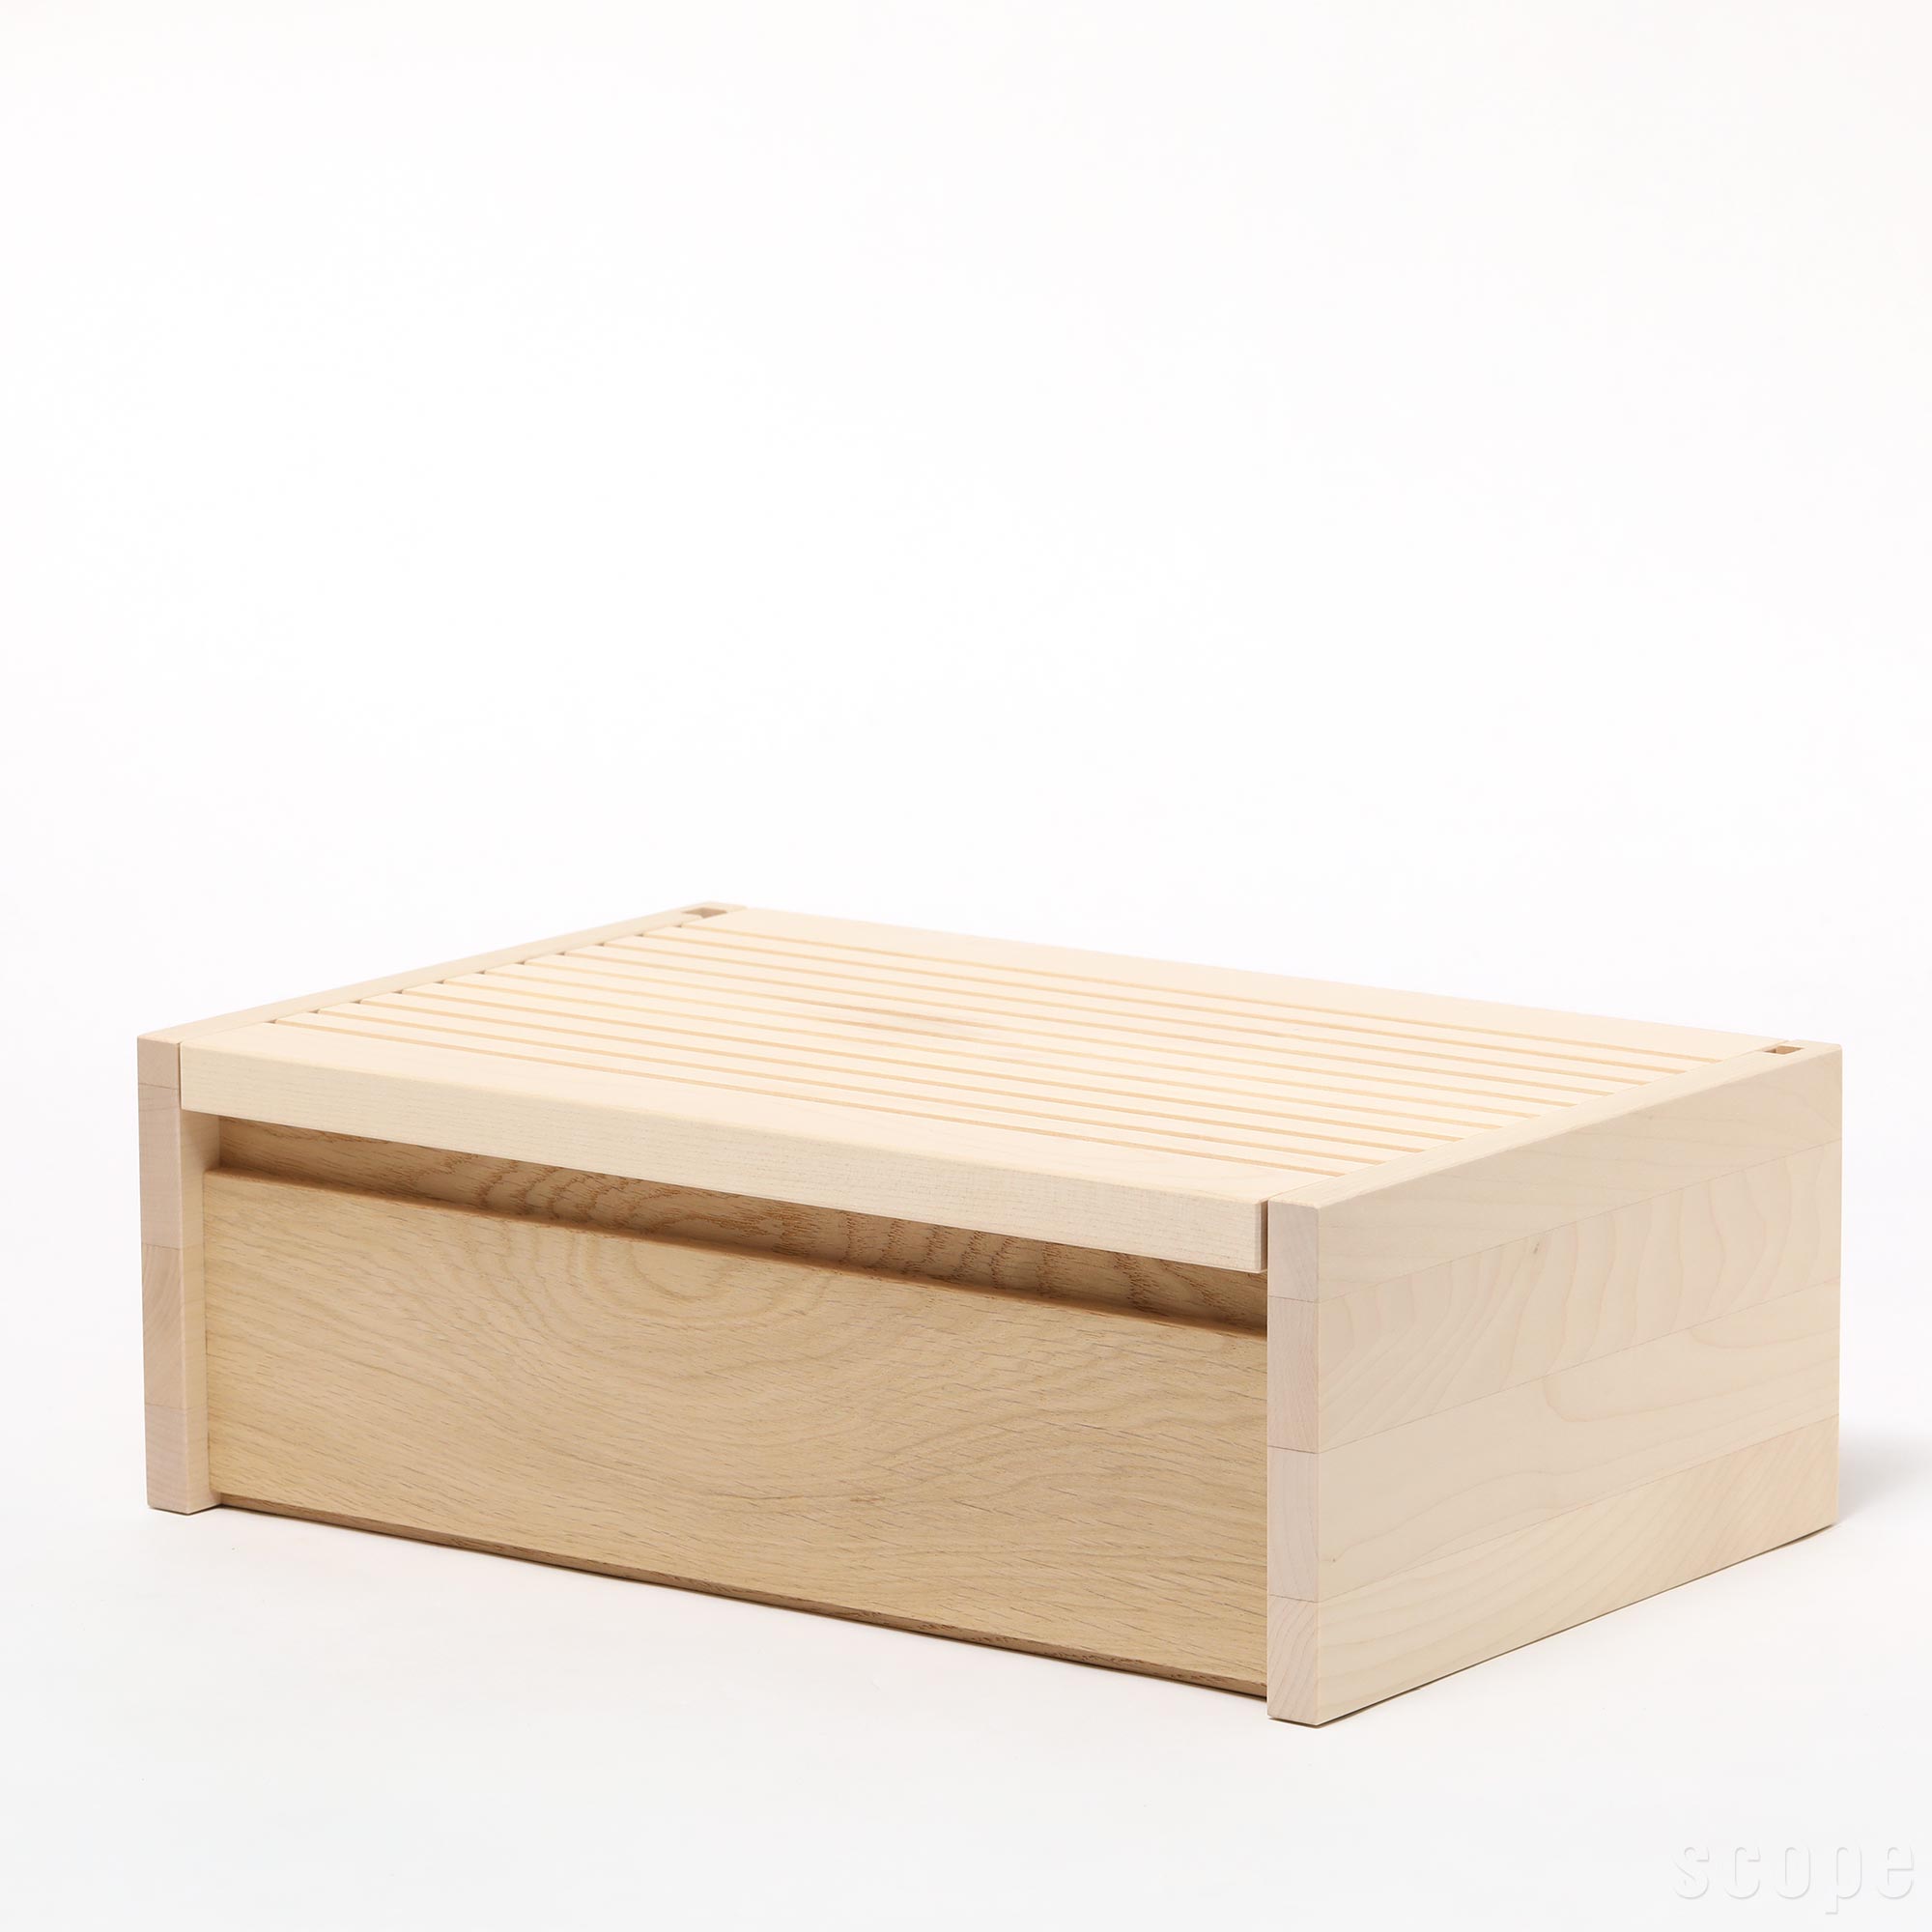 【0233】サイド バイ サイド / ブレッドボックス [SIDE BY SIDE / Bread Box]